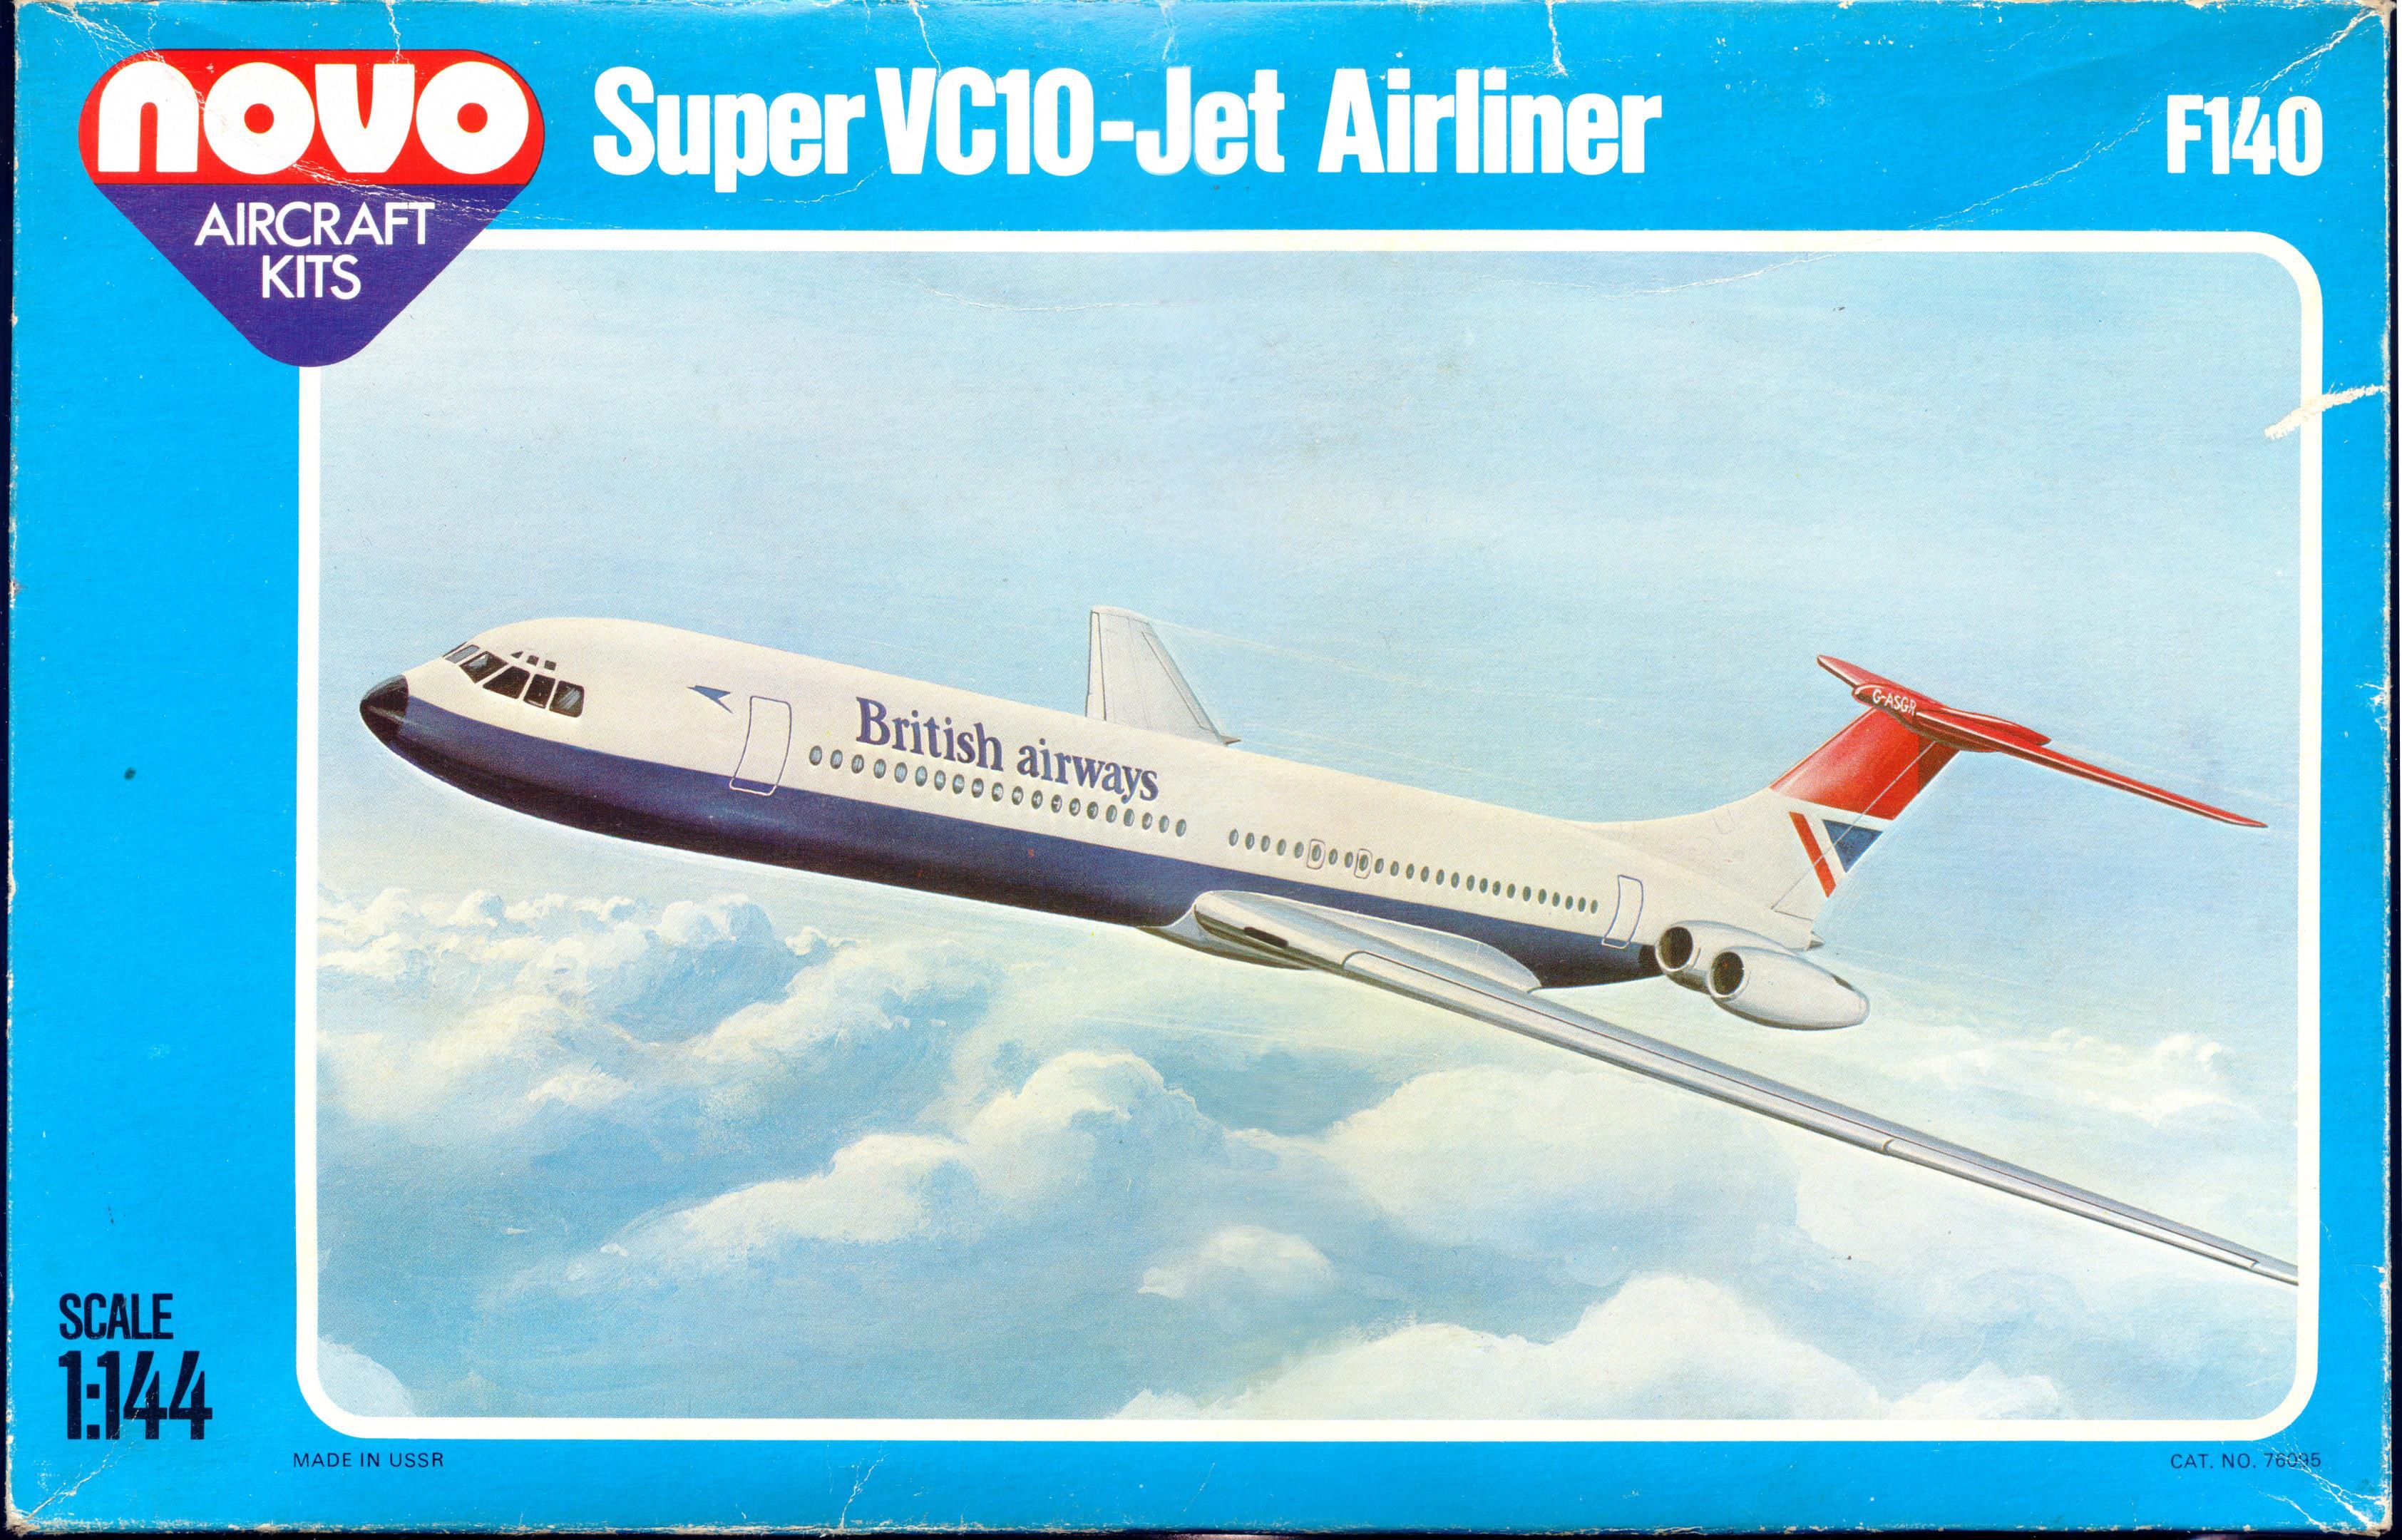 Коробка NOVO F140 Super VC10 - Jet Airliner, NOVO Toys Ltd, 1980